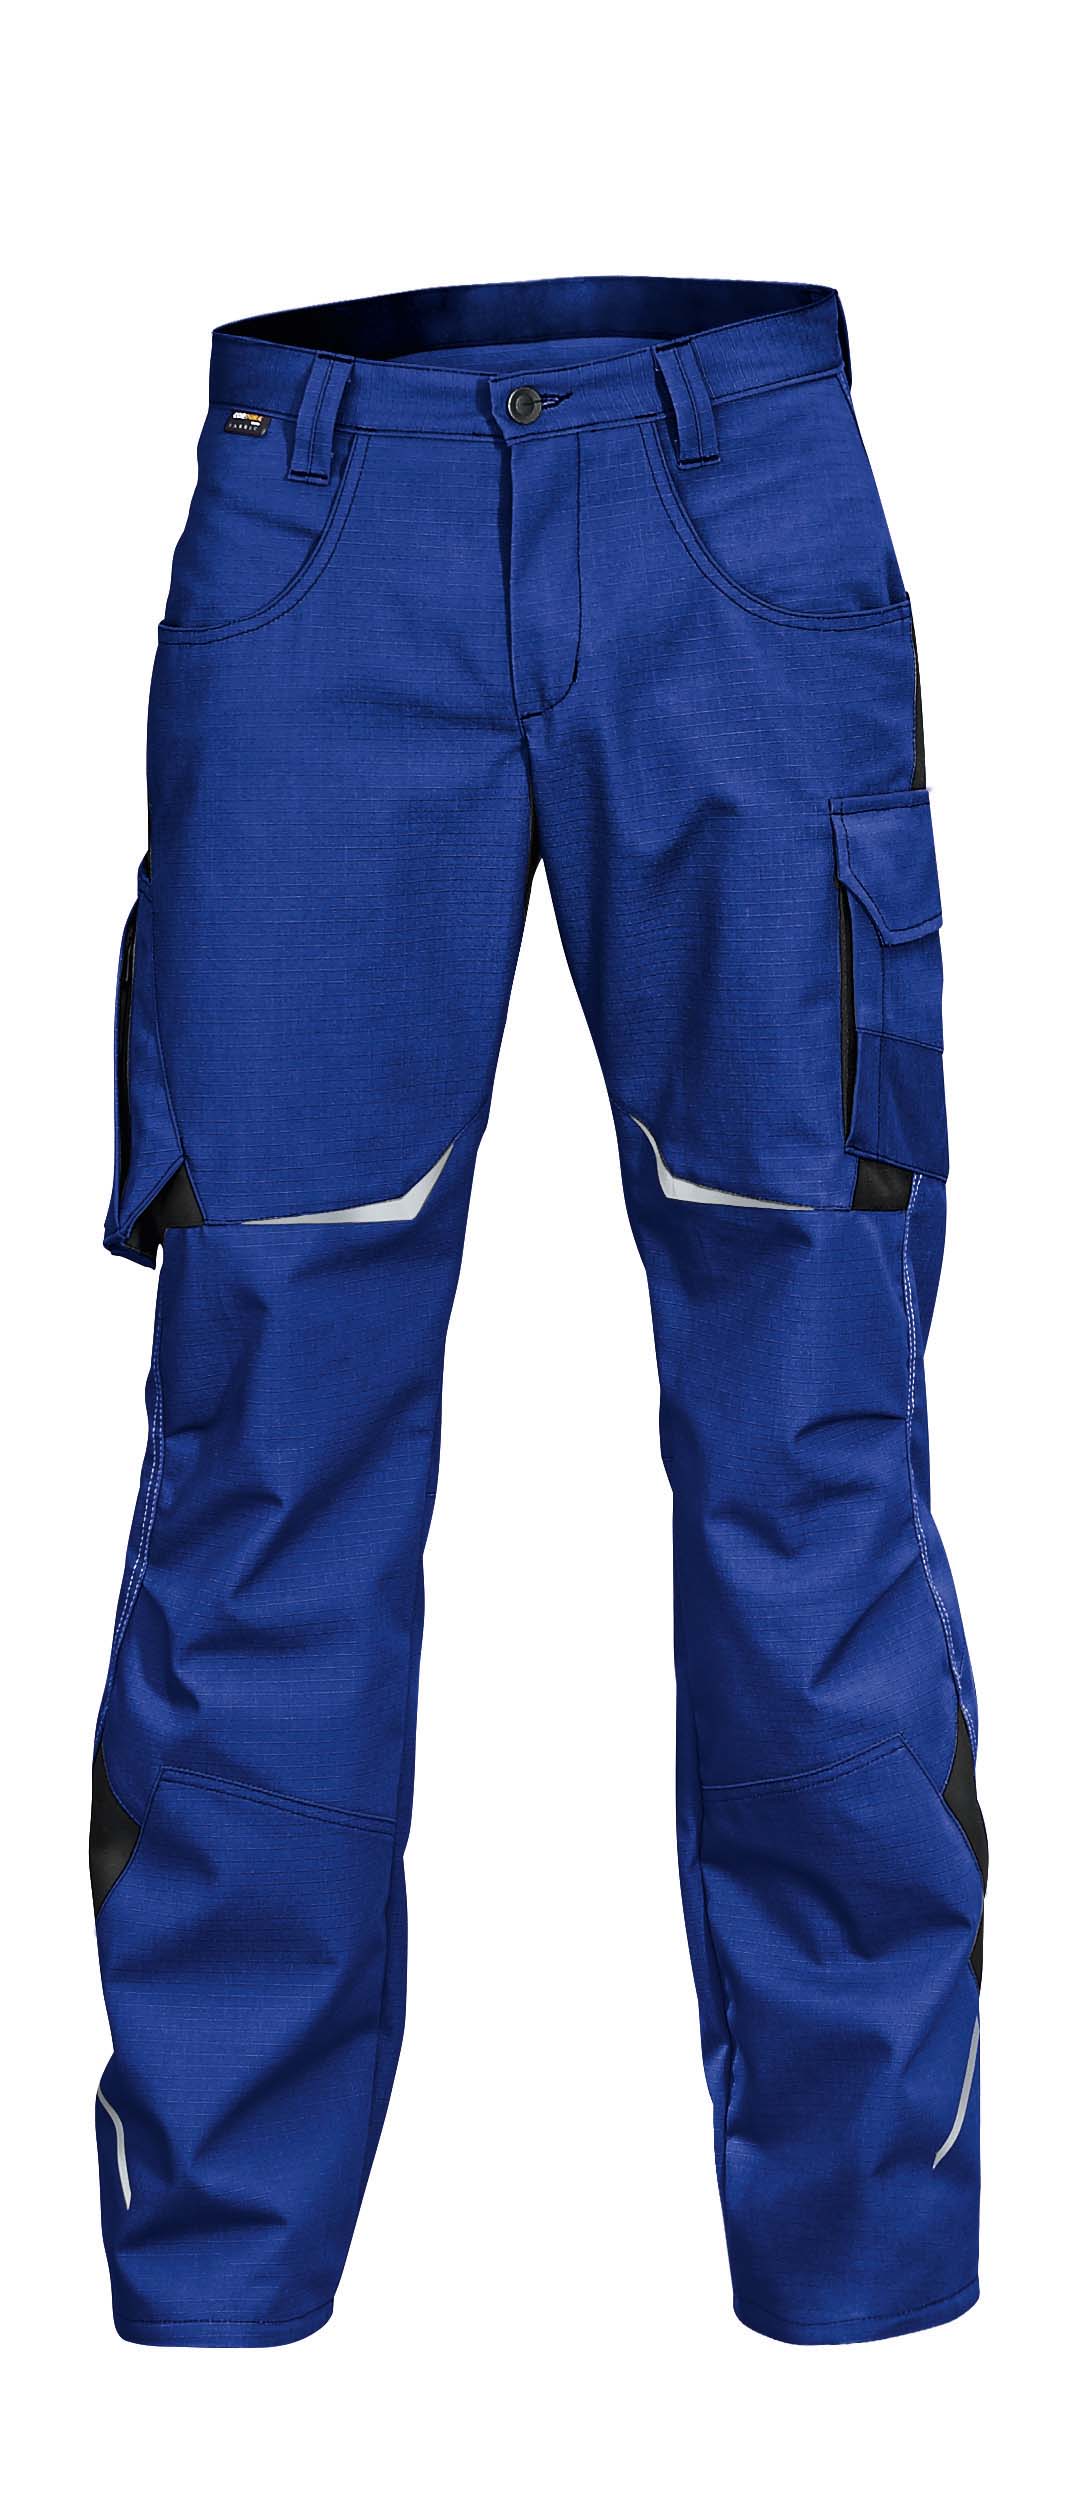 Kübler Pulsschlag Hose blau / schwarz Arbeitshose - Reiter Arbeitsschutz